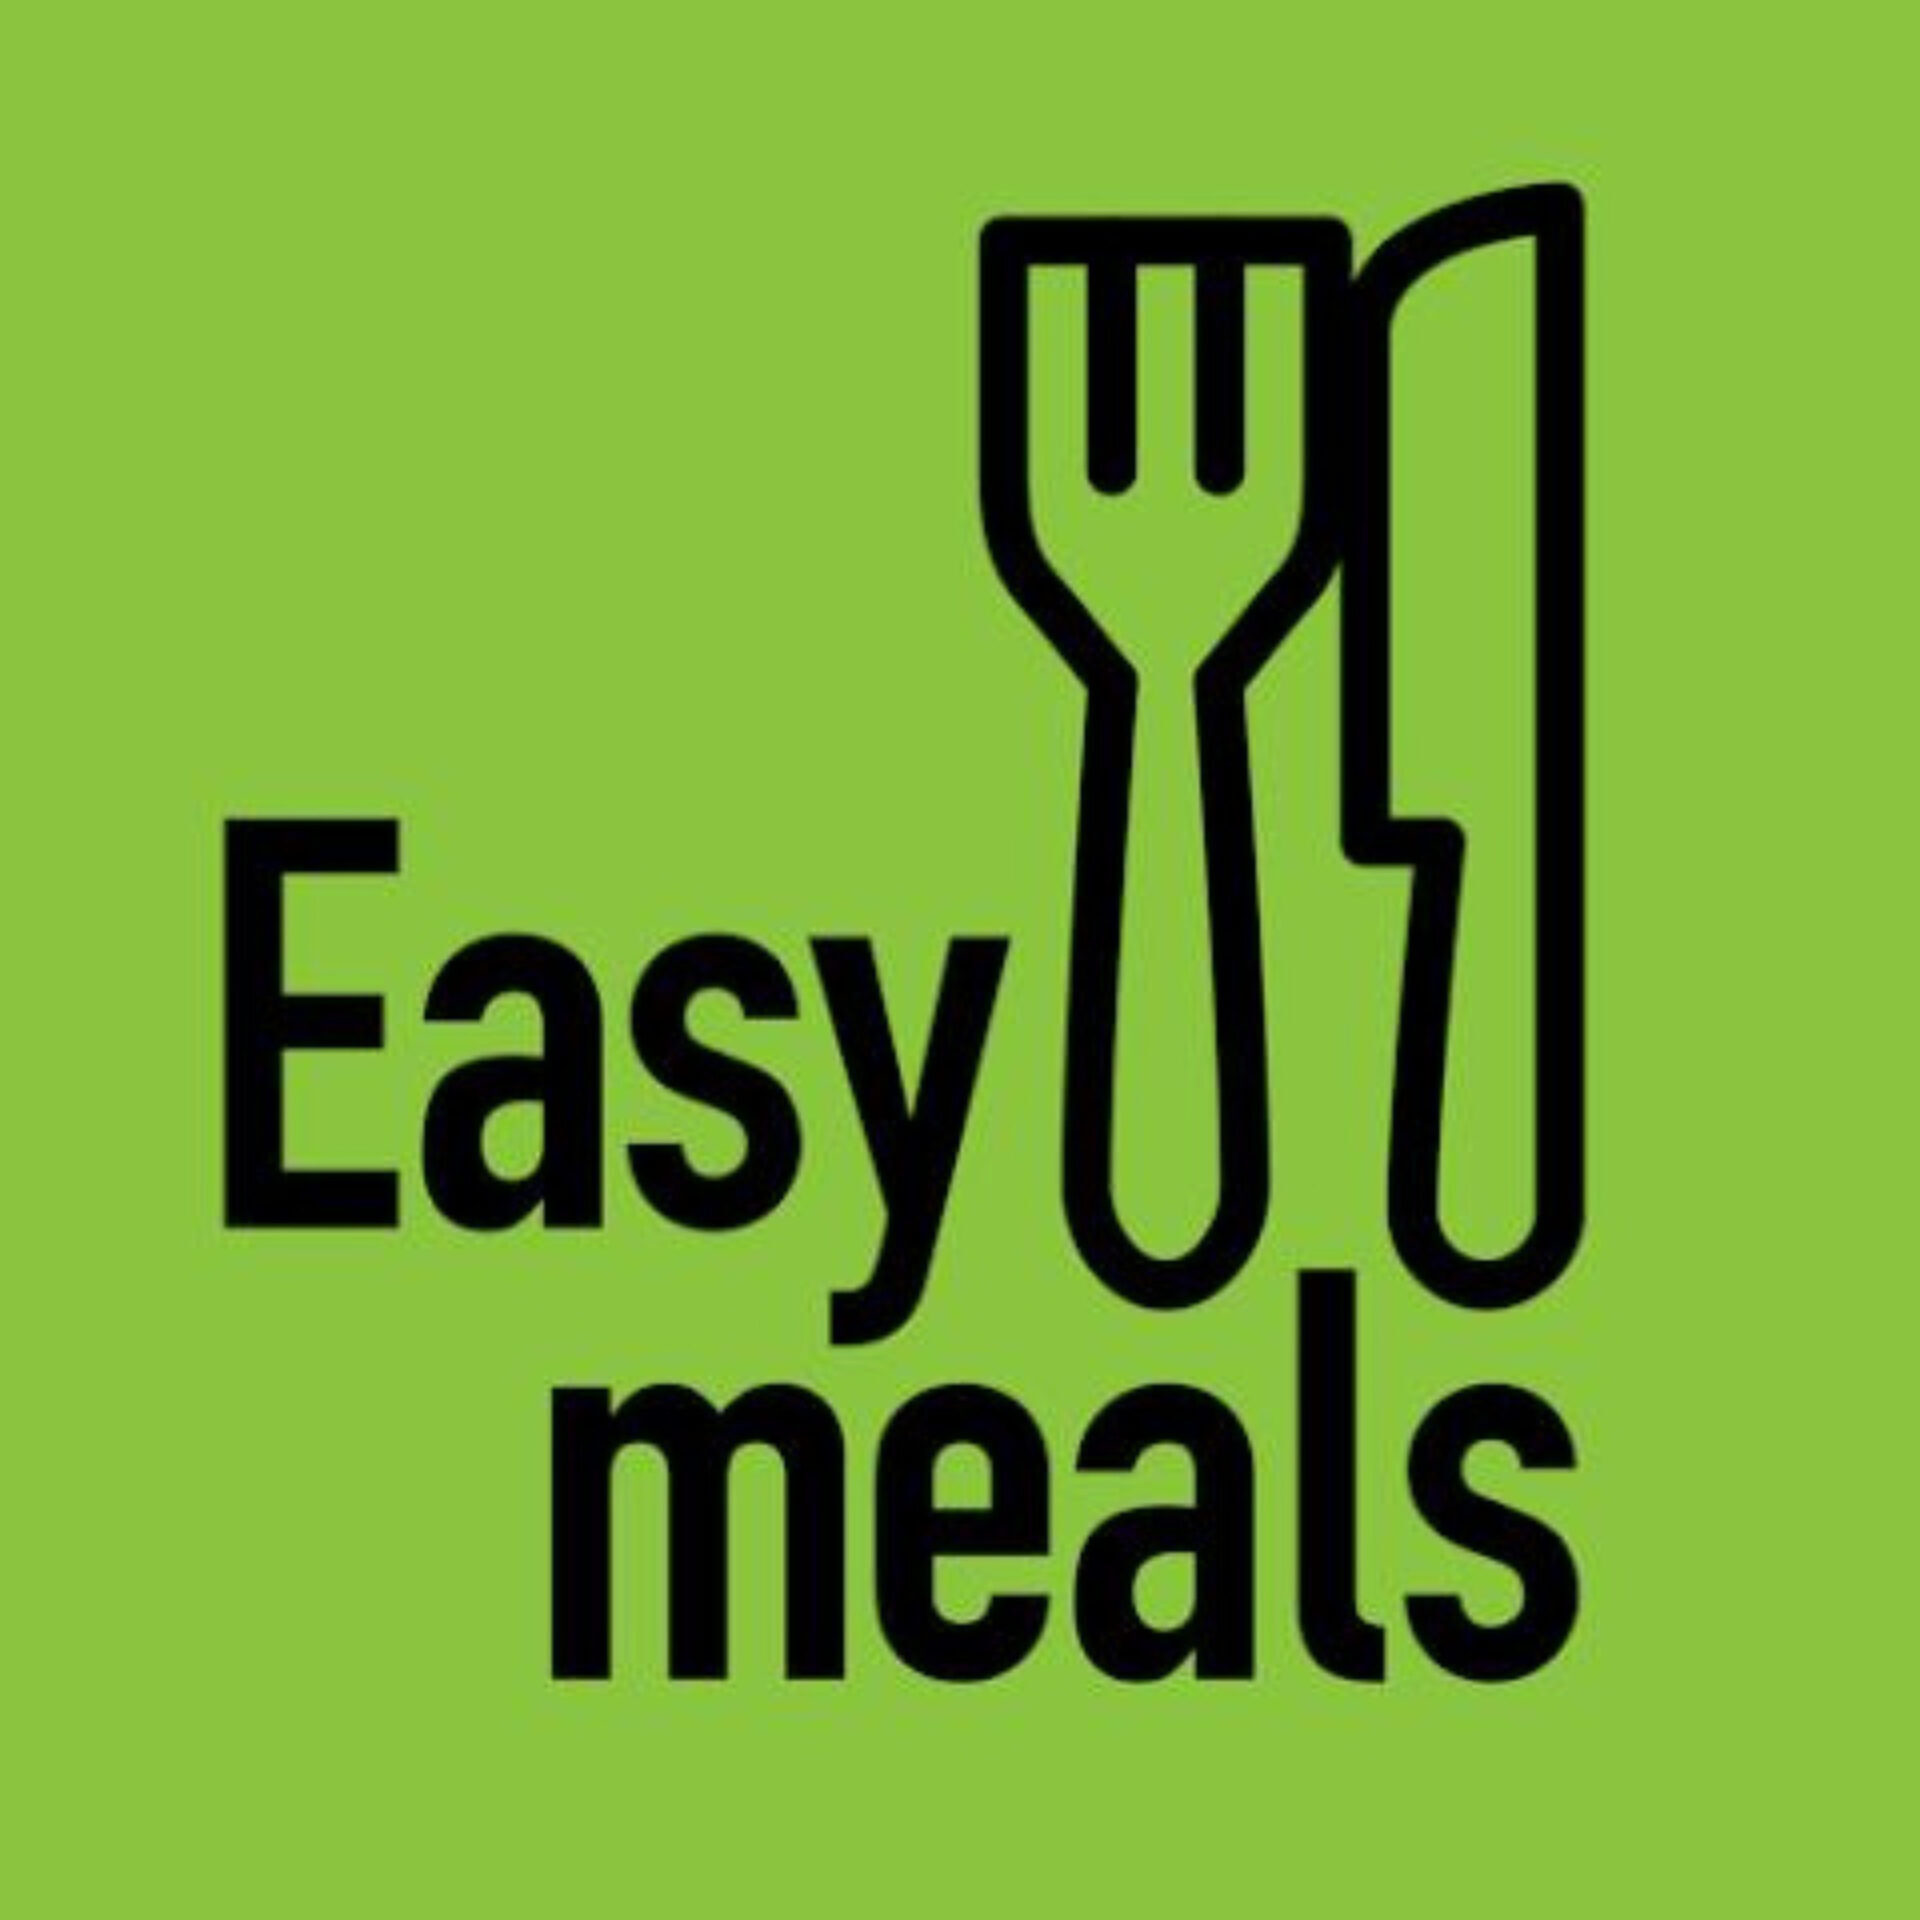 NHS Easy Meals logo